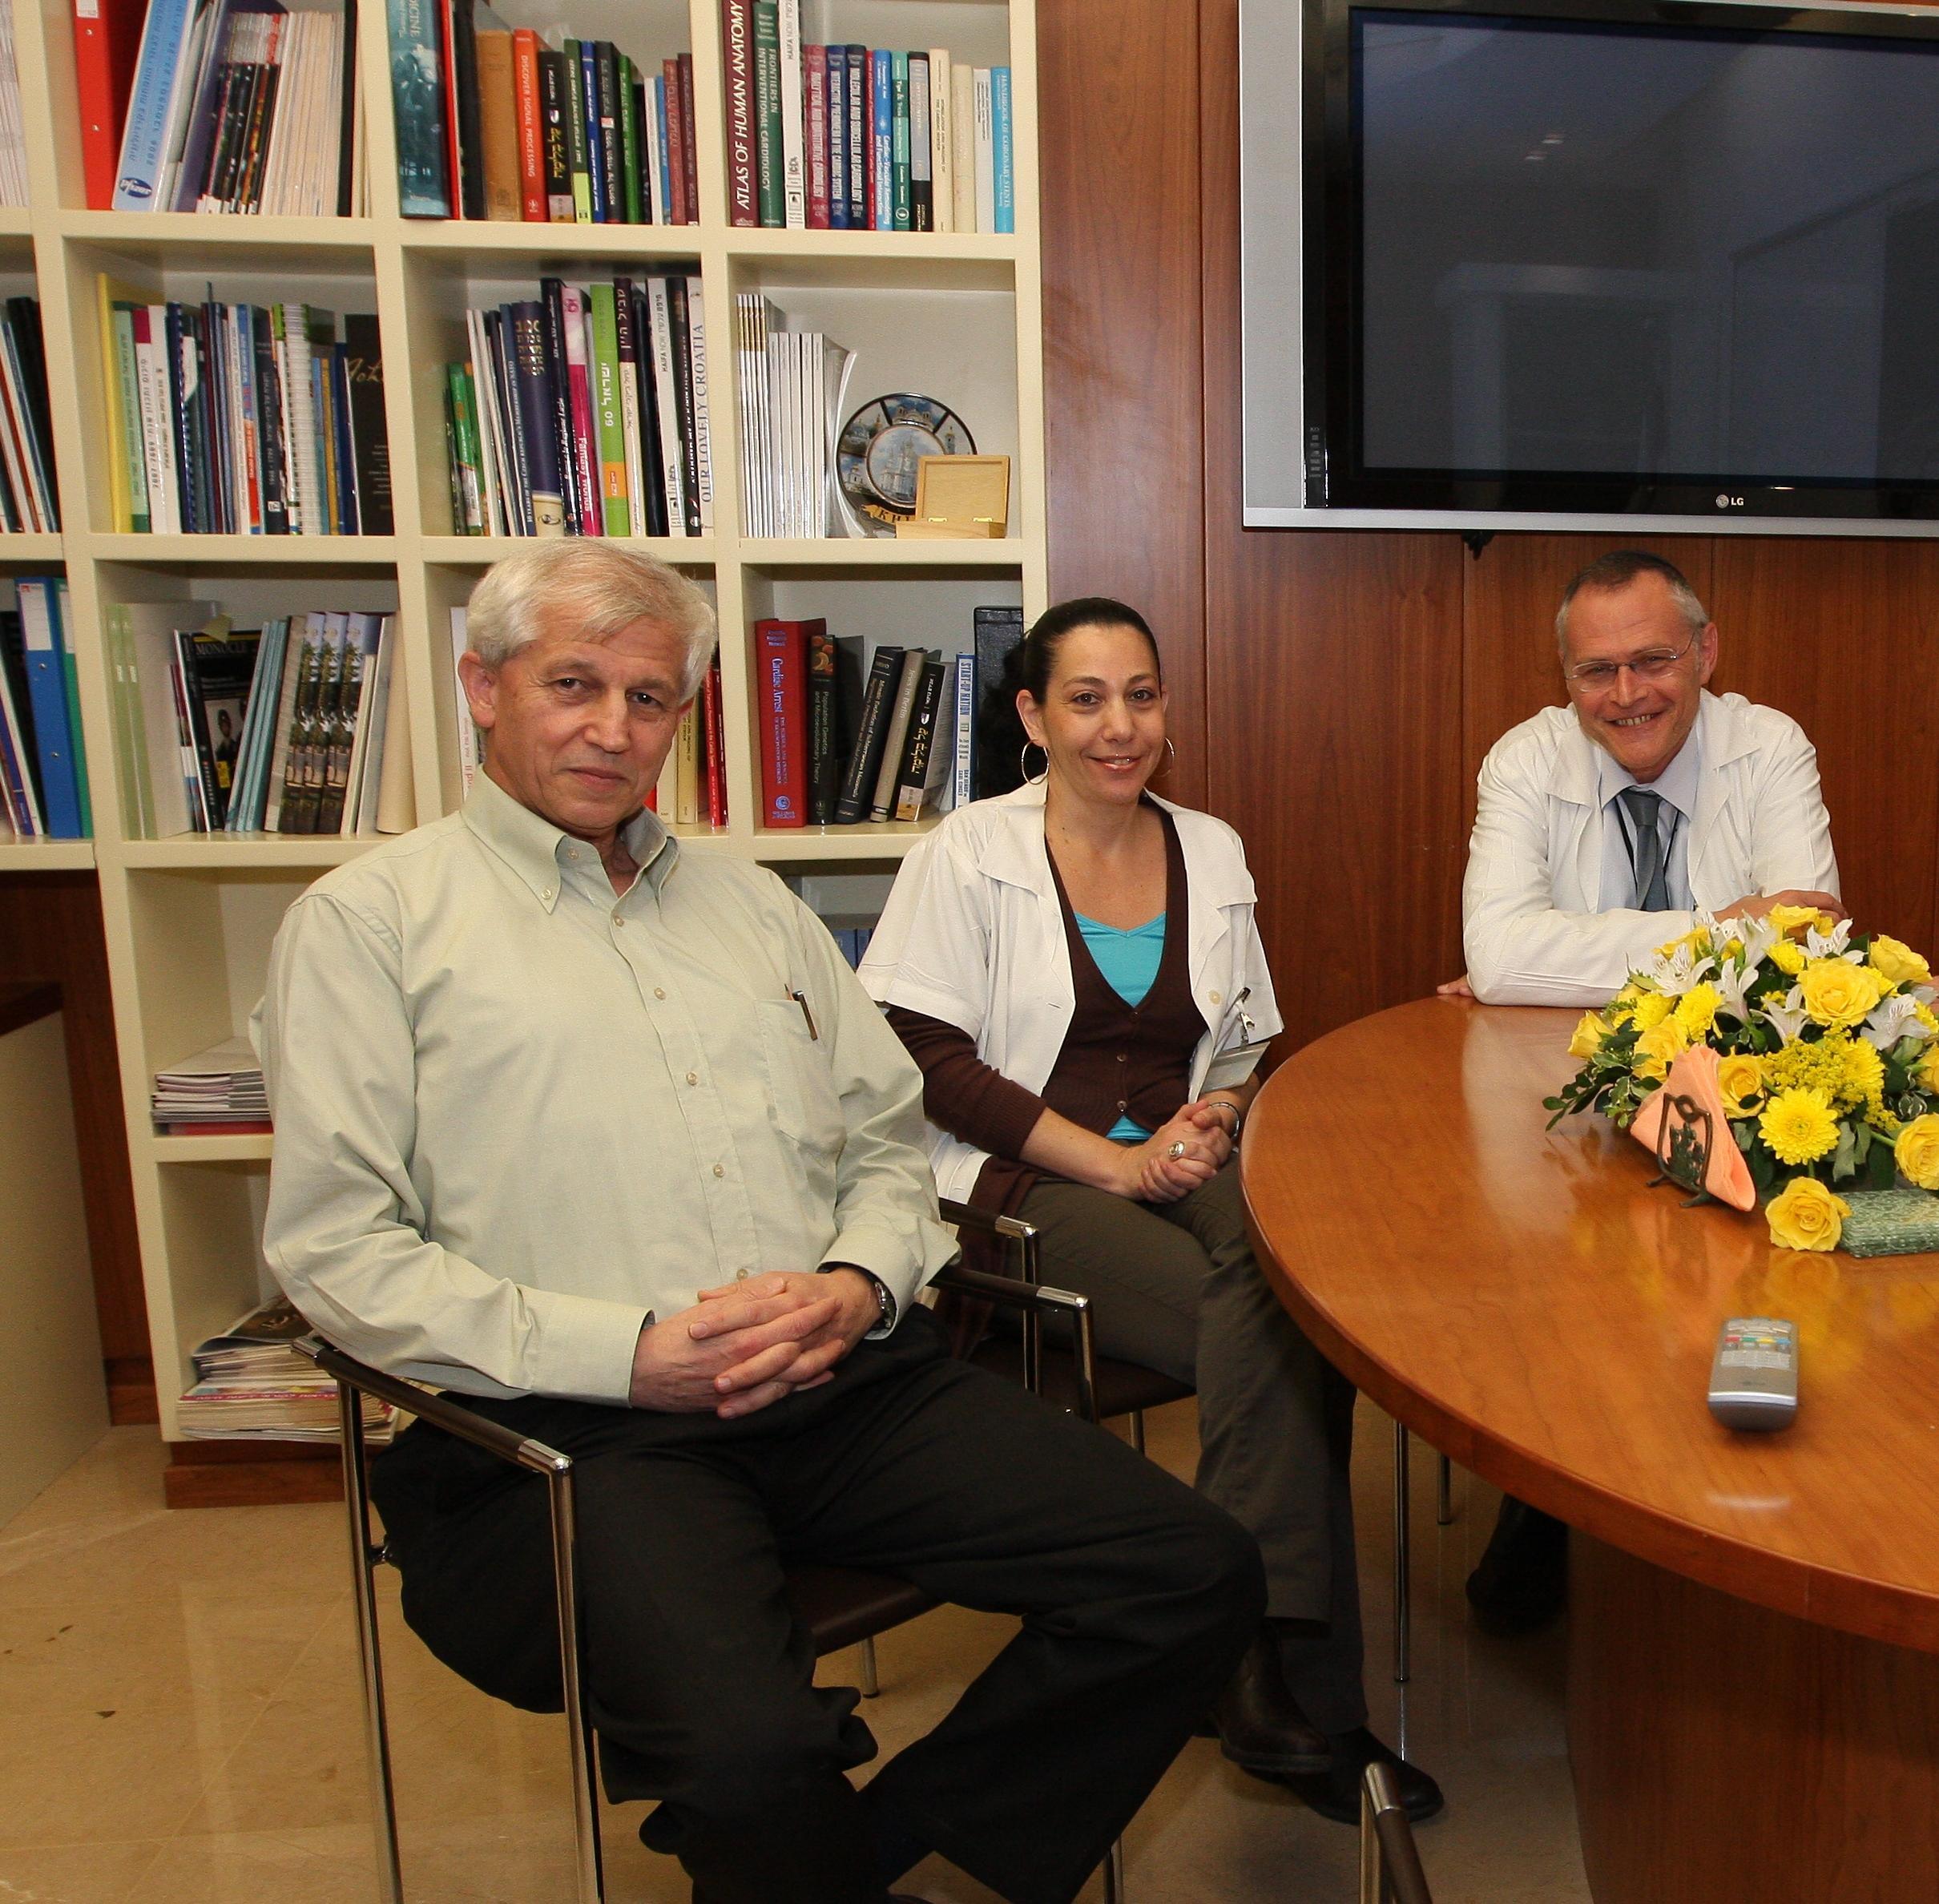 من اليمين إلى اليسار: البروفيسور سكورتسكي، الدكتور ماجن والبروفيسور زيليكوفيتش تصوير: بيوتر بليتار